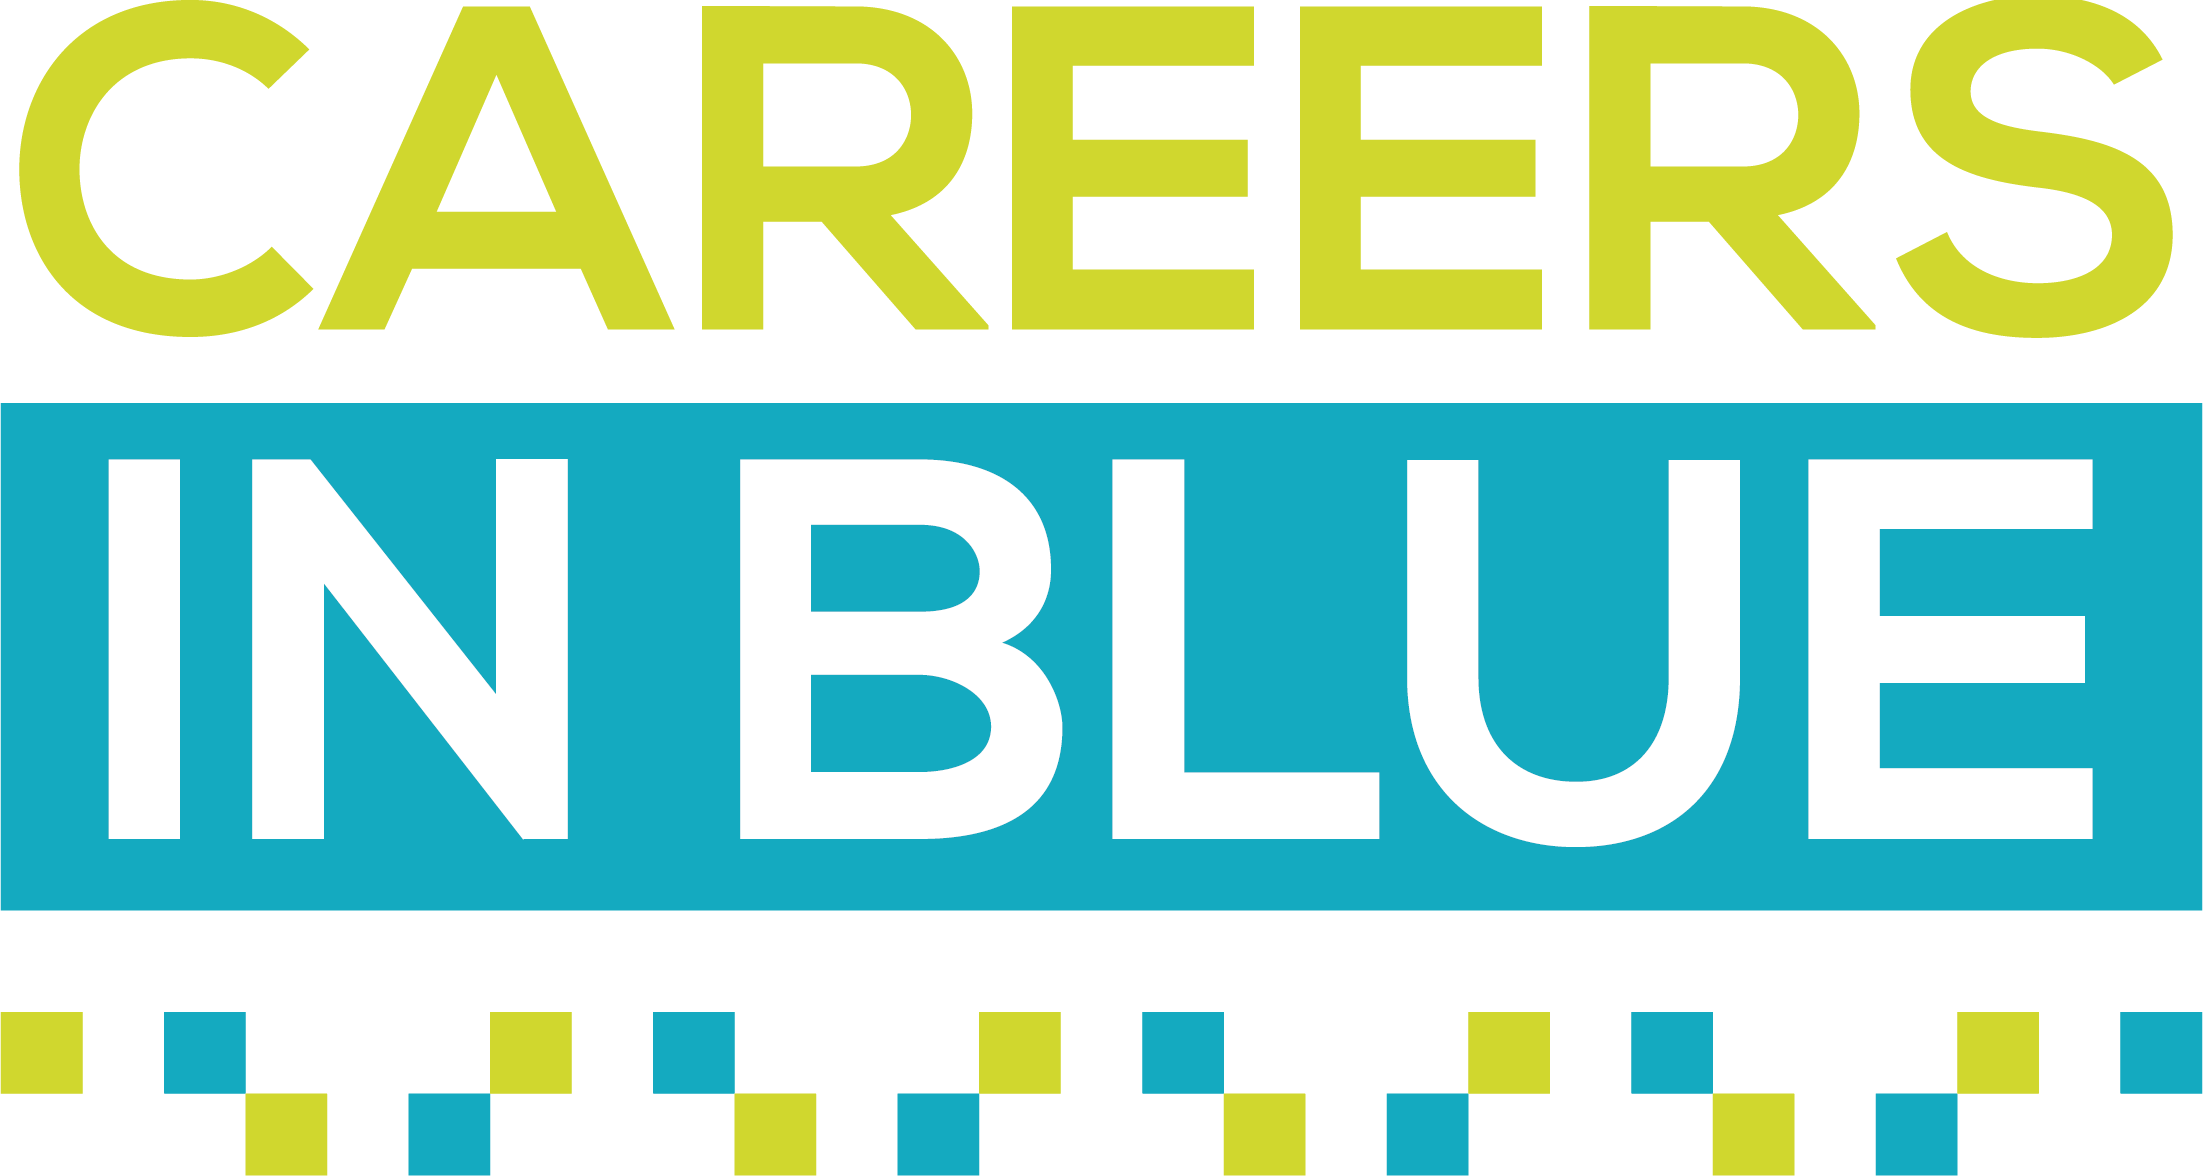 Careers in Blue